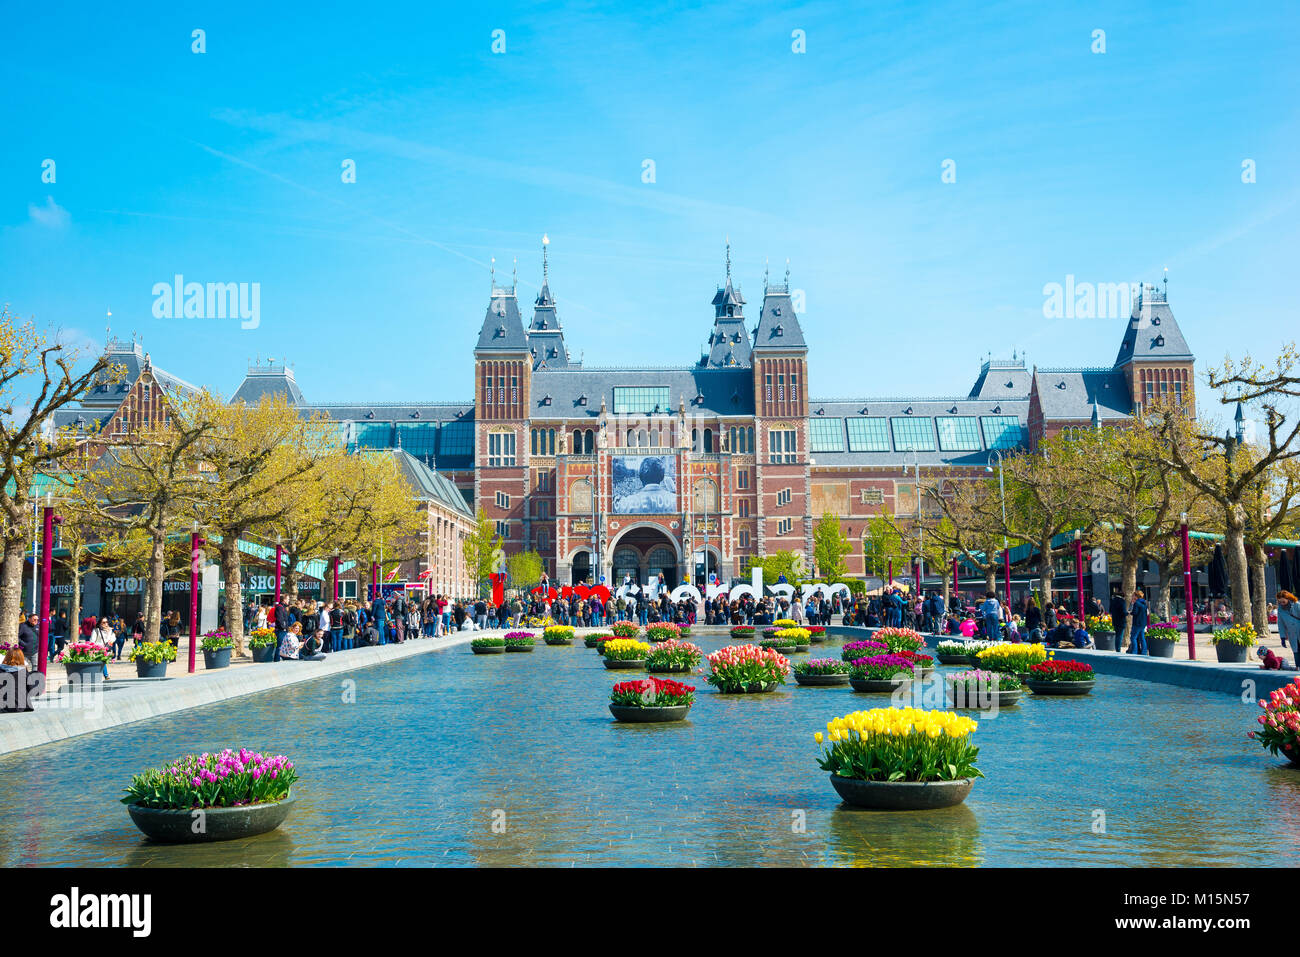 Amsterdam, Niederlande - 20 April 2017: Schöne Tulpen vor dem Rijksmuseum - Nationale staatliche Museum ist ein beliebtes touristisches Ziel in Bin Stockfoto